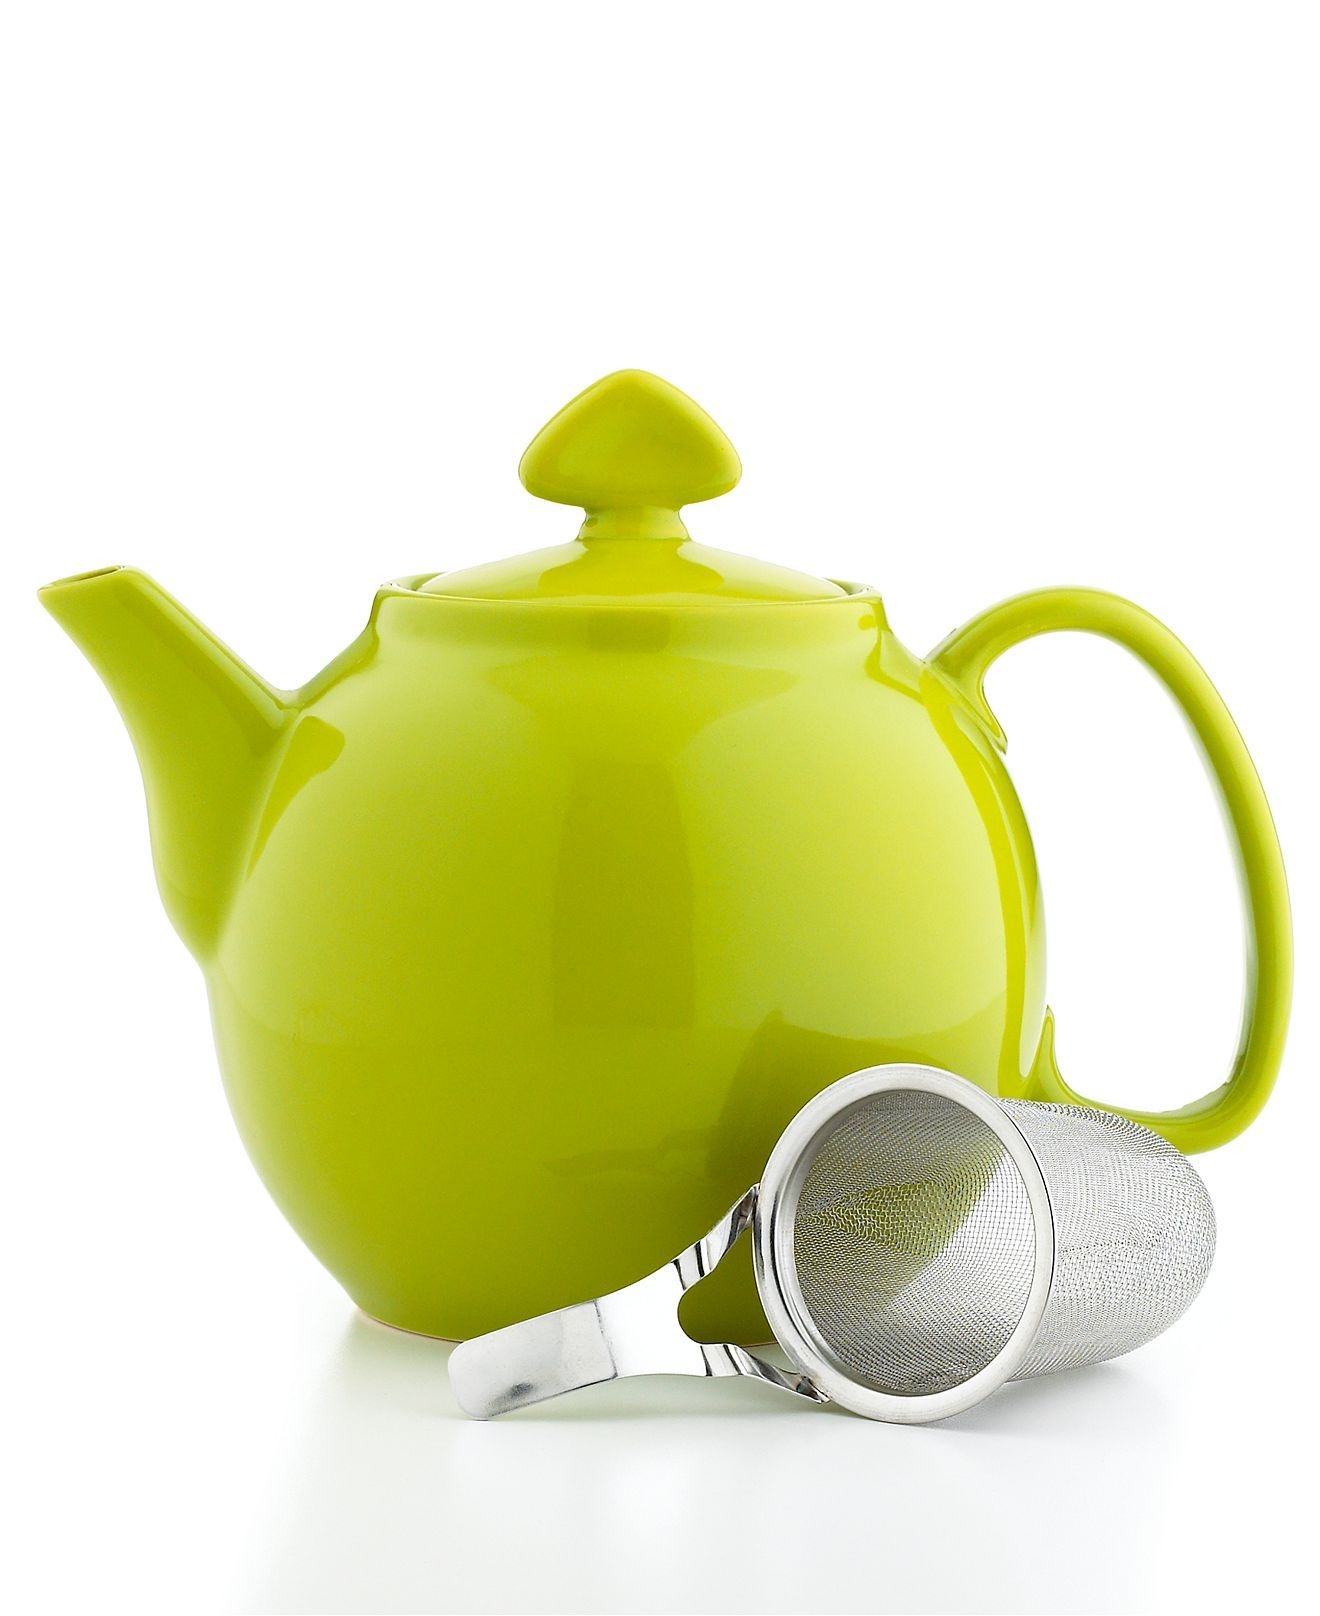 Lime green tea kettle 11